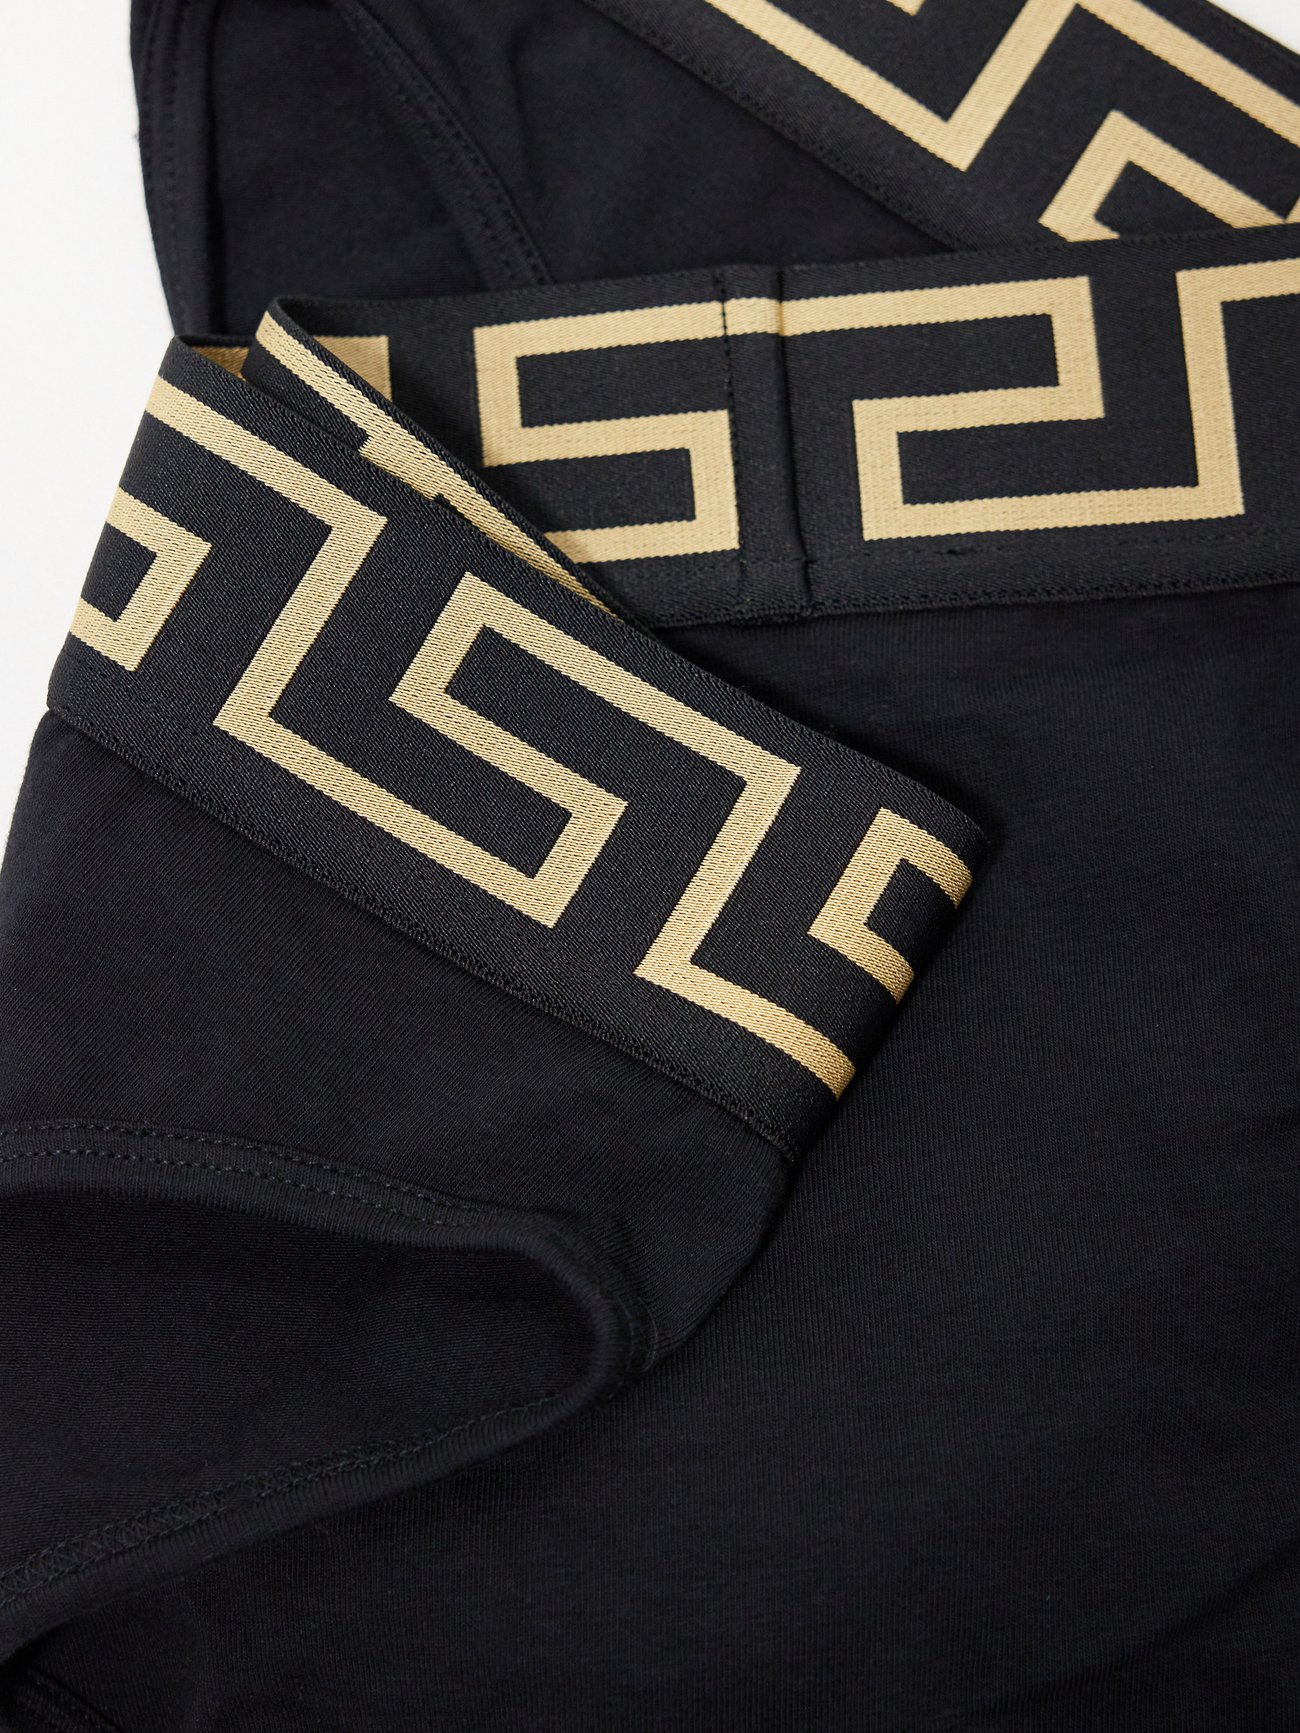 Versace Greca Border Stretch-Cotton Boxer Briefs, Underwear